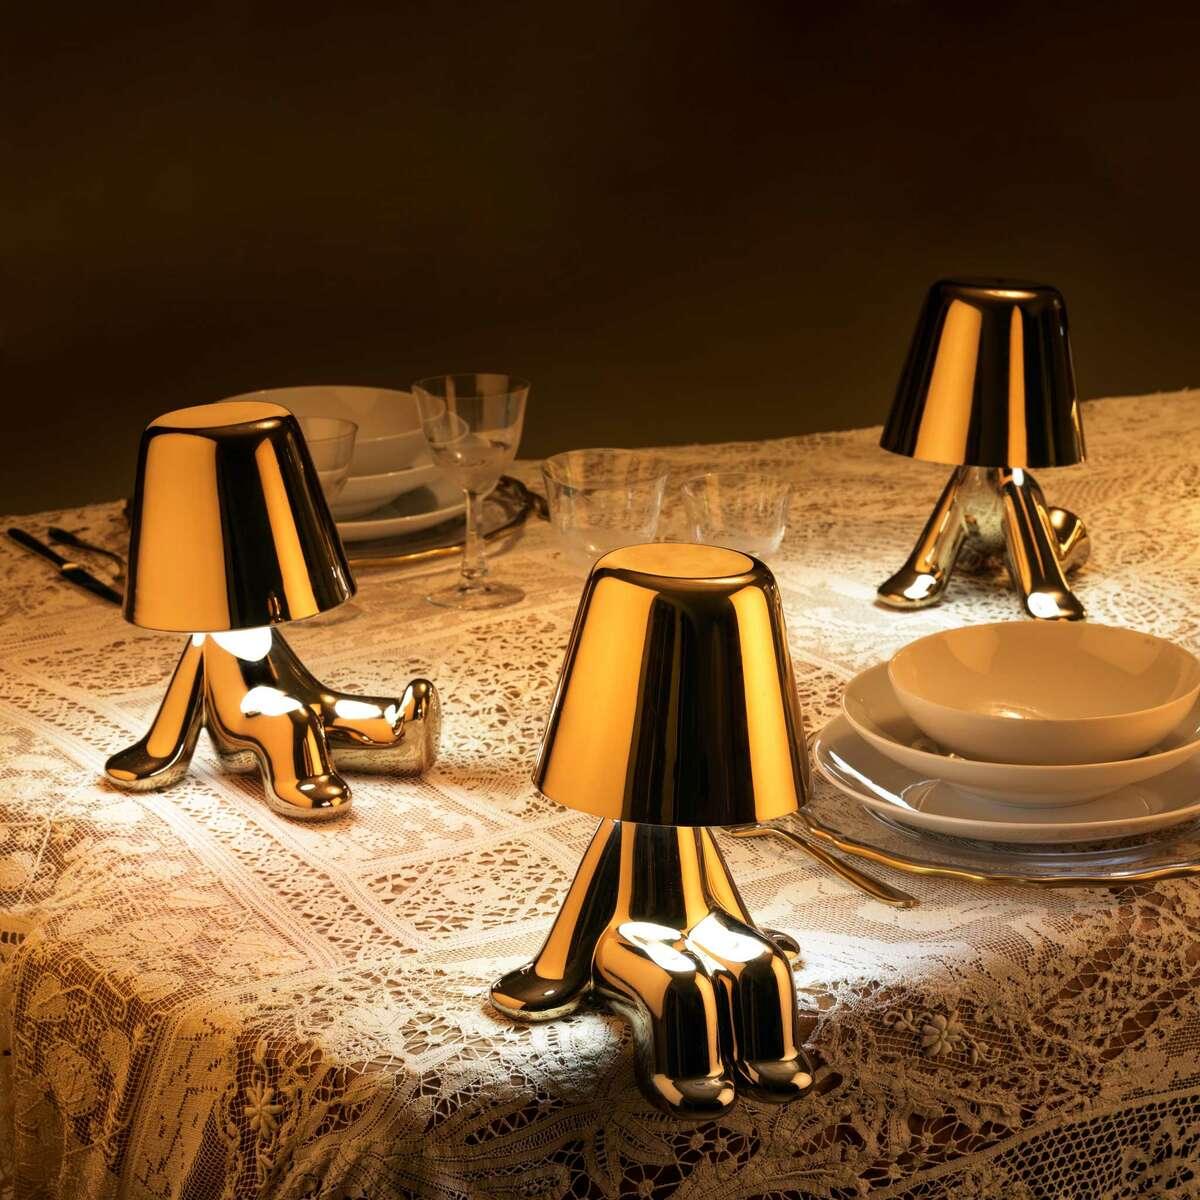 Ta urocza, złota lampa z kolekcji Golden Brothers, zaprojektowanej przez Stefano Giovannoniego, nazywa się Tom. Po zapaleniu, na plastycznej sylwetce oddbija się miękkie światło, uwydatniając płynność sylwetki.